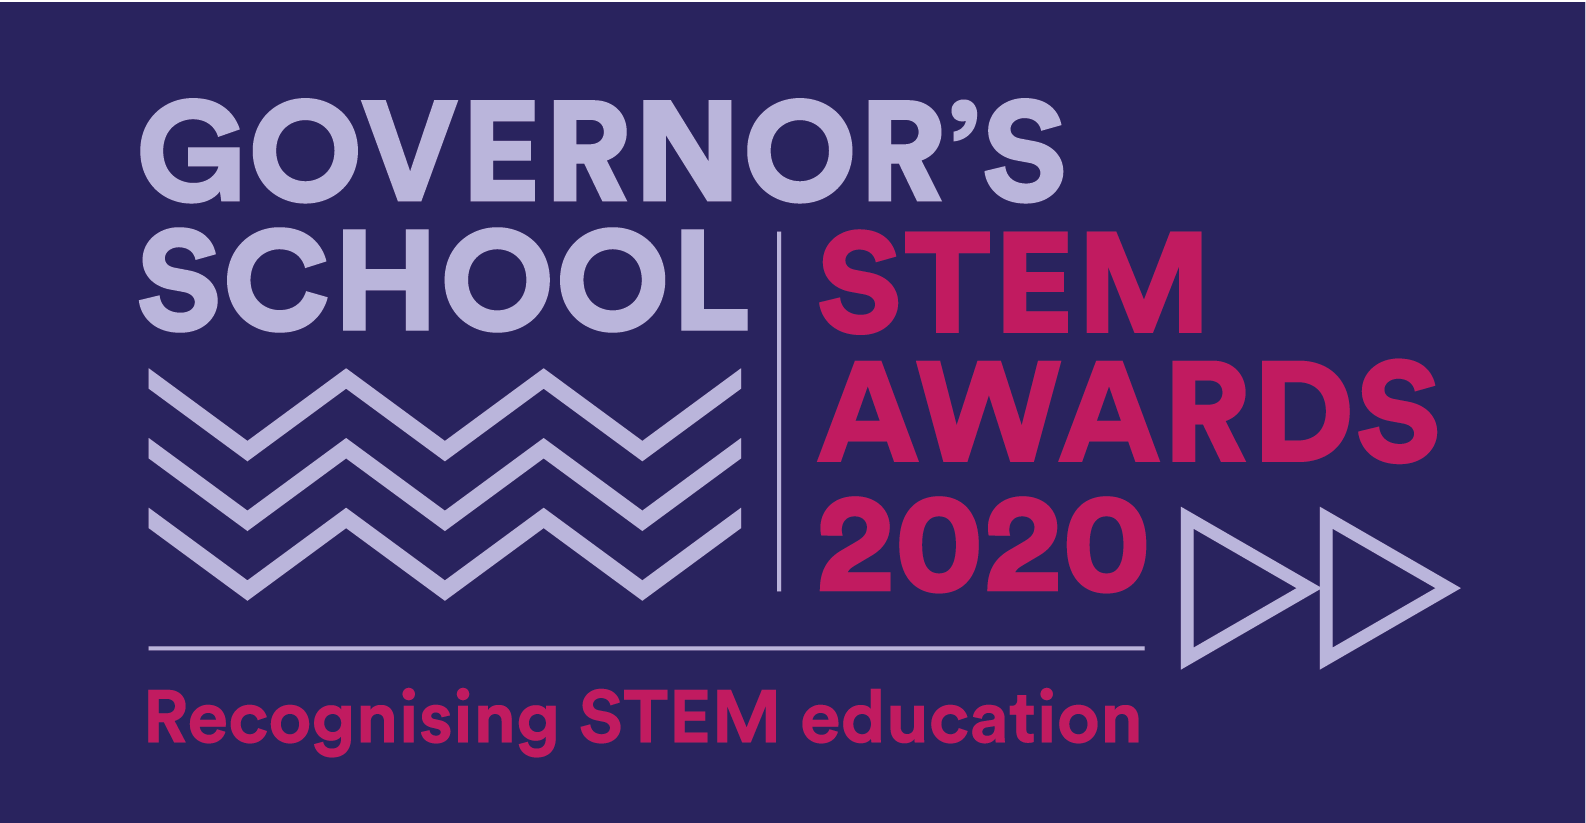 Governor's School STEM Awards 2020 logo